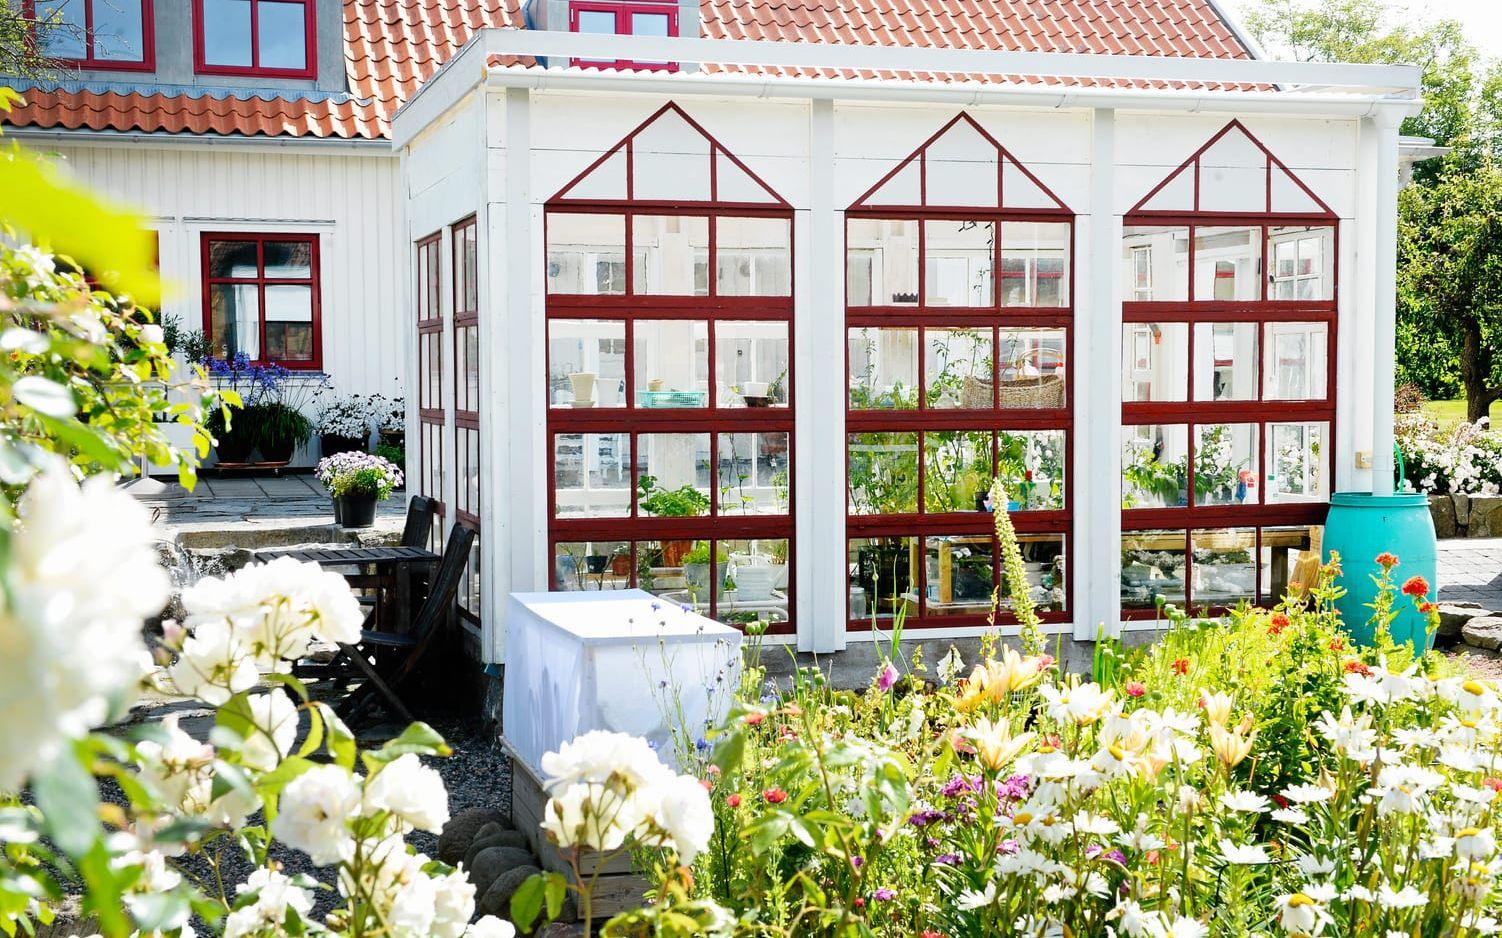 Växthuset har påmålade "fuskfönster", och är helt gjort i återbrukat material. BILD: Camilla Svensson